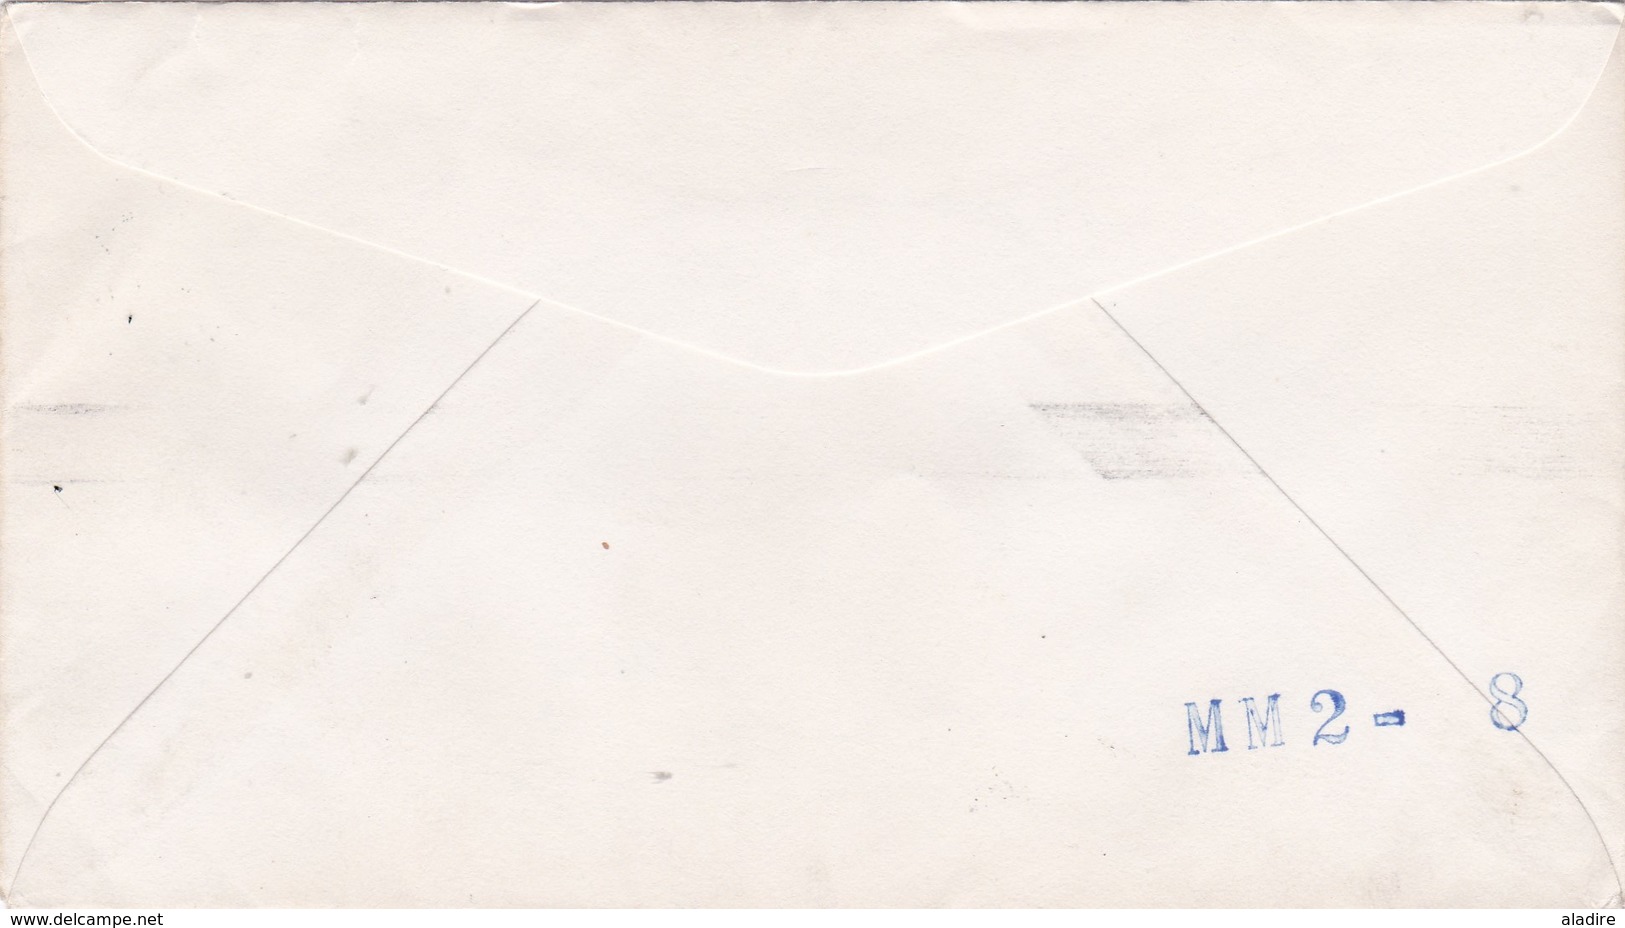 1956 - Enveloppe De Le Havre Principal, France Vers Cleveland, USA Par Paquebot - Maritime Post